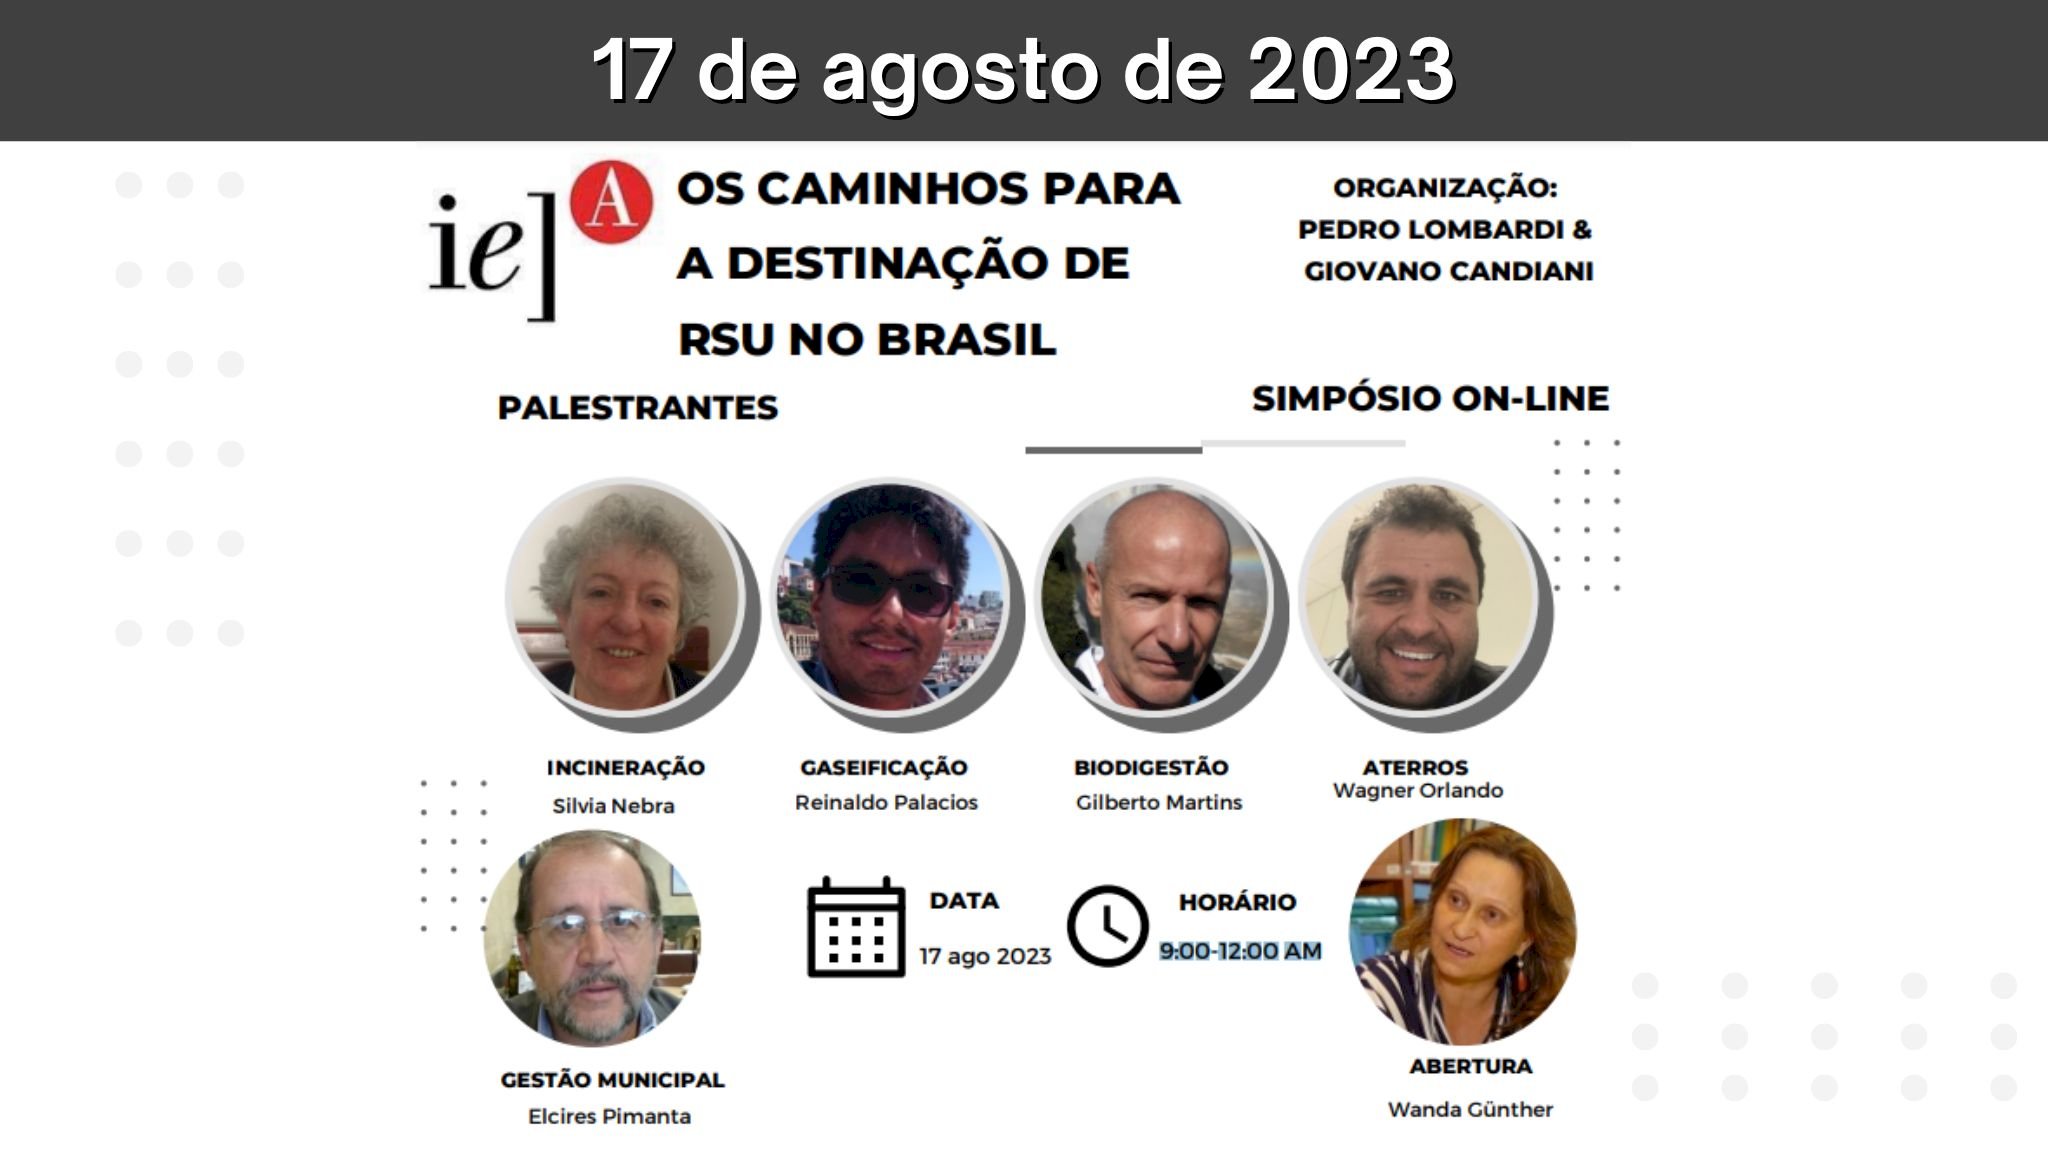 Simpósio On-Line - Os caminhos para a destinação de RSU no Brasil